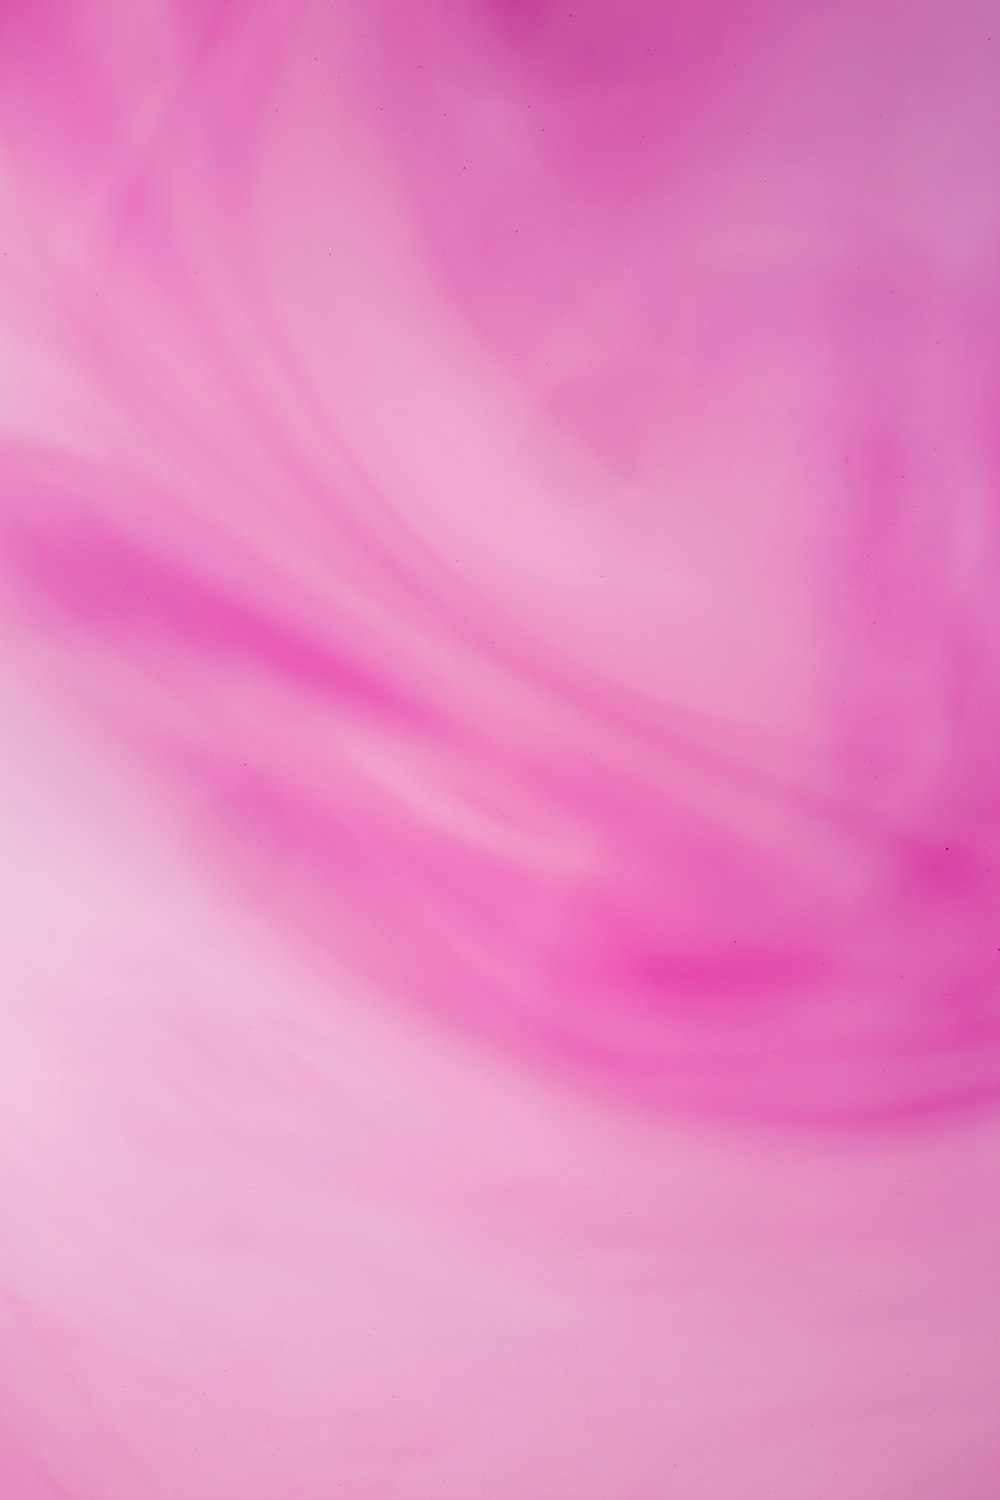 Nền hồng gradasi nổi bật với sự trộn lẫn của các tông màu tươi sáng. Hãy xem hình ảnh này và cảm nhận được sự hòa quyện đầy ấn tượng của nền hồng này nhé!